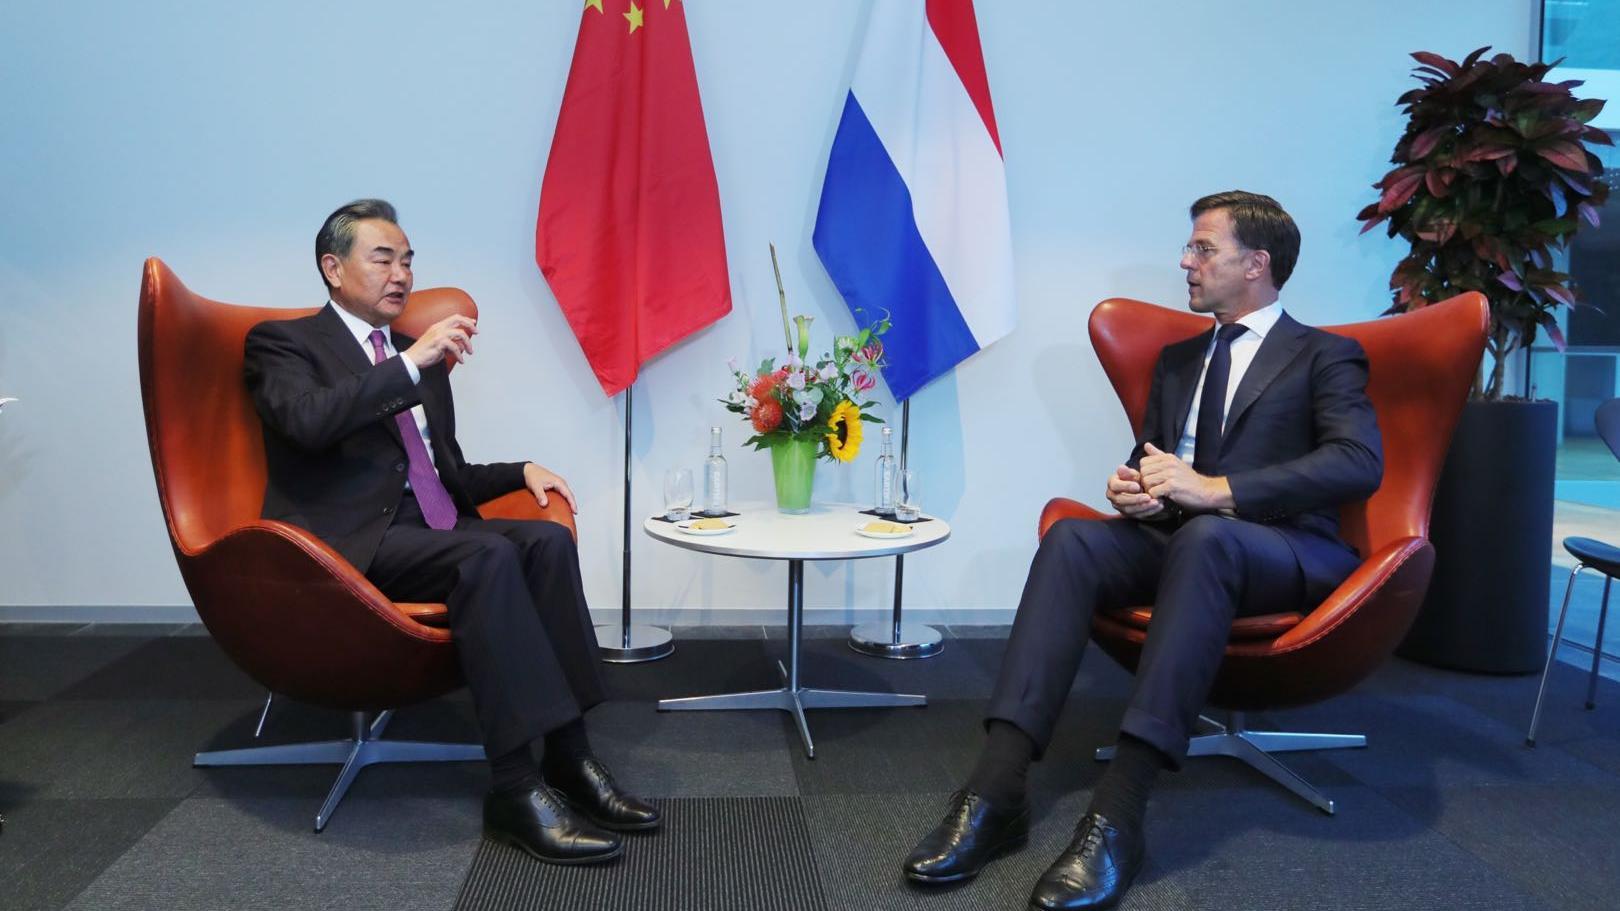 La Chine va renforcer les échanges de haut niveau et la coopération avec les Pays-Bas